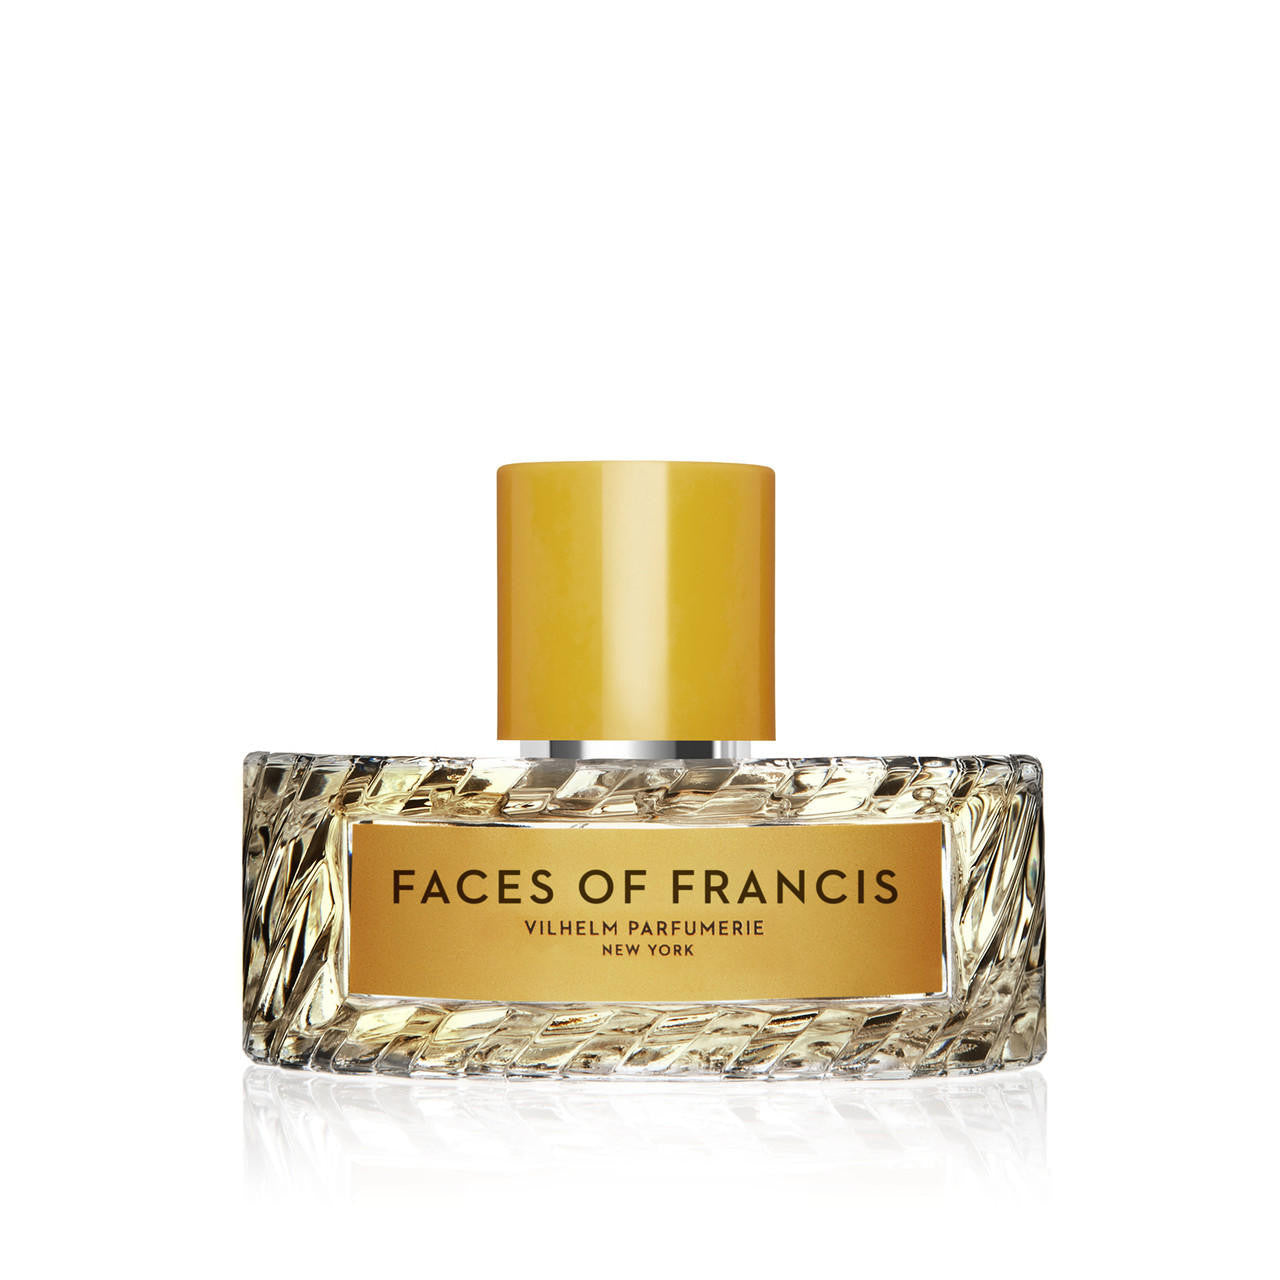  Vilhelm Parfumerie FACES OF FRANCIS Eau de Parfum 